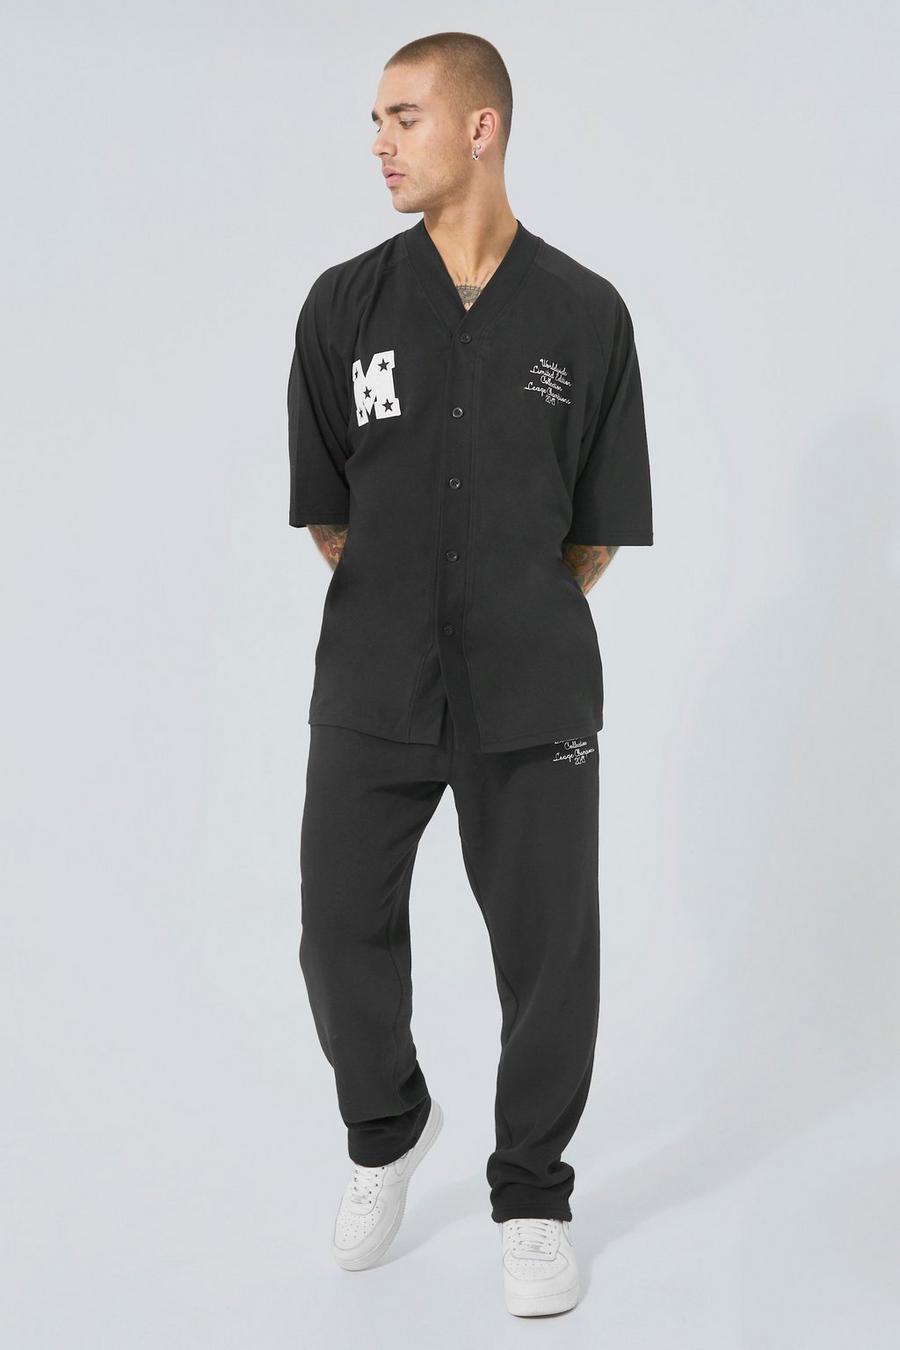 Black T-shirt och mjukisbyxor med baseballmotiv